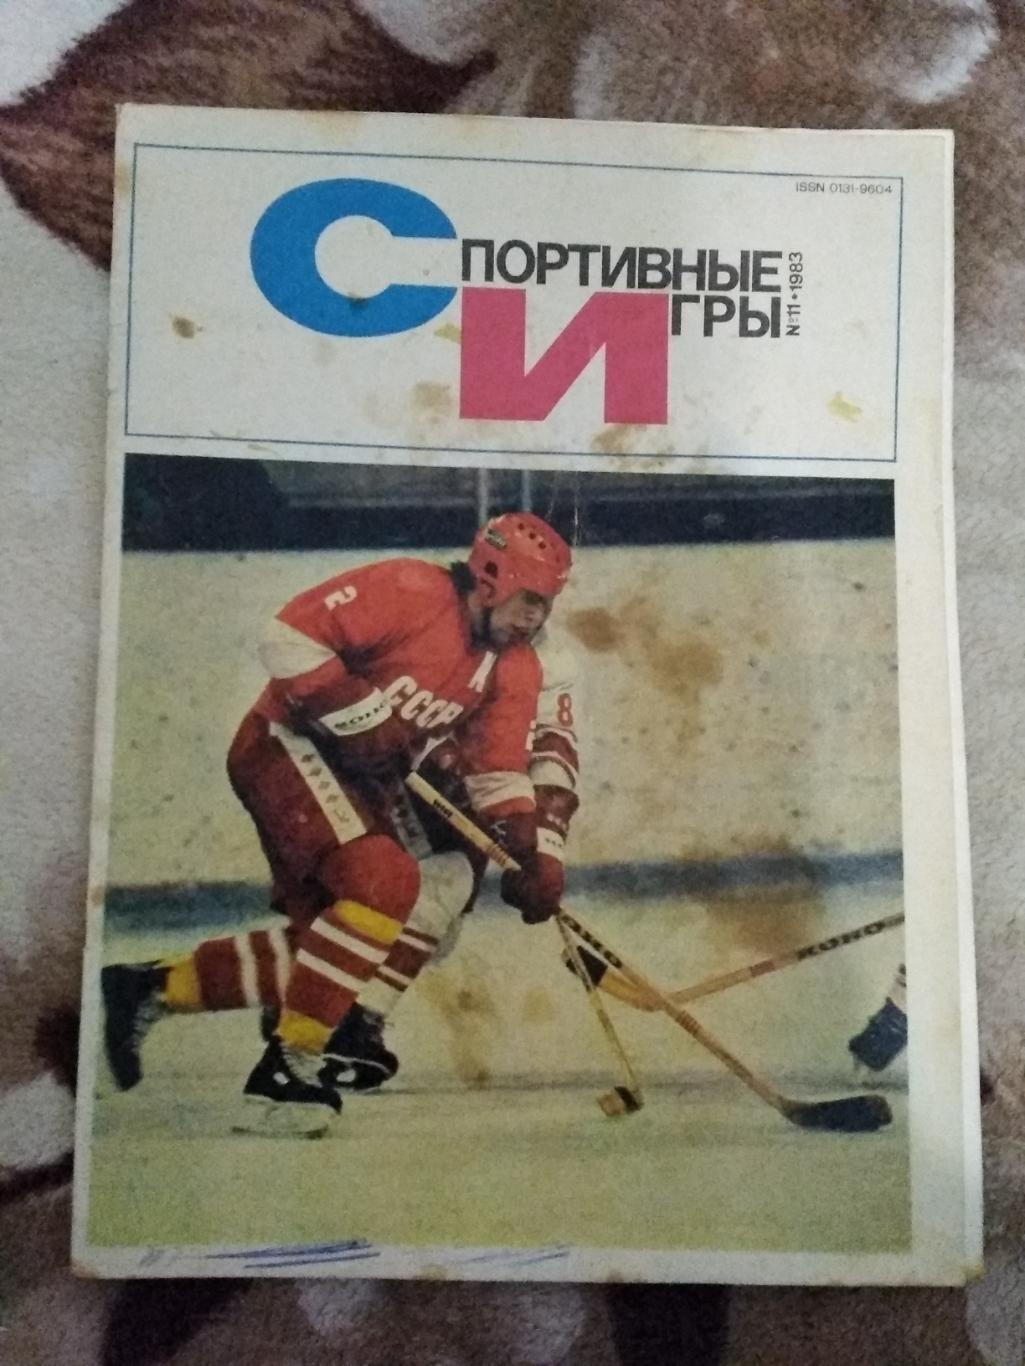 Журнал.Спортивные игры № 11 1983 г.